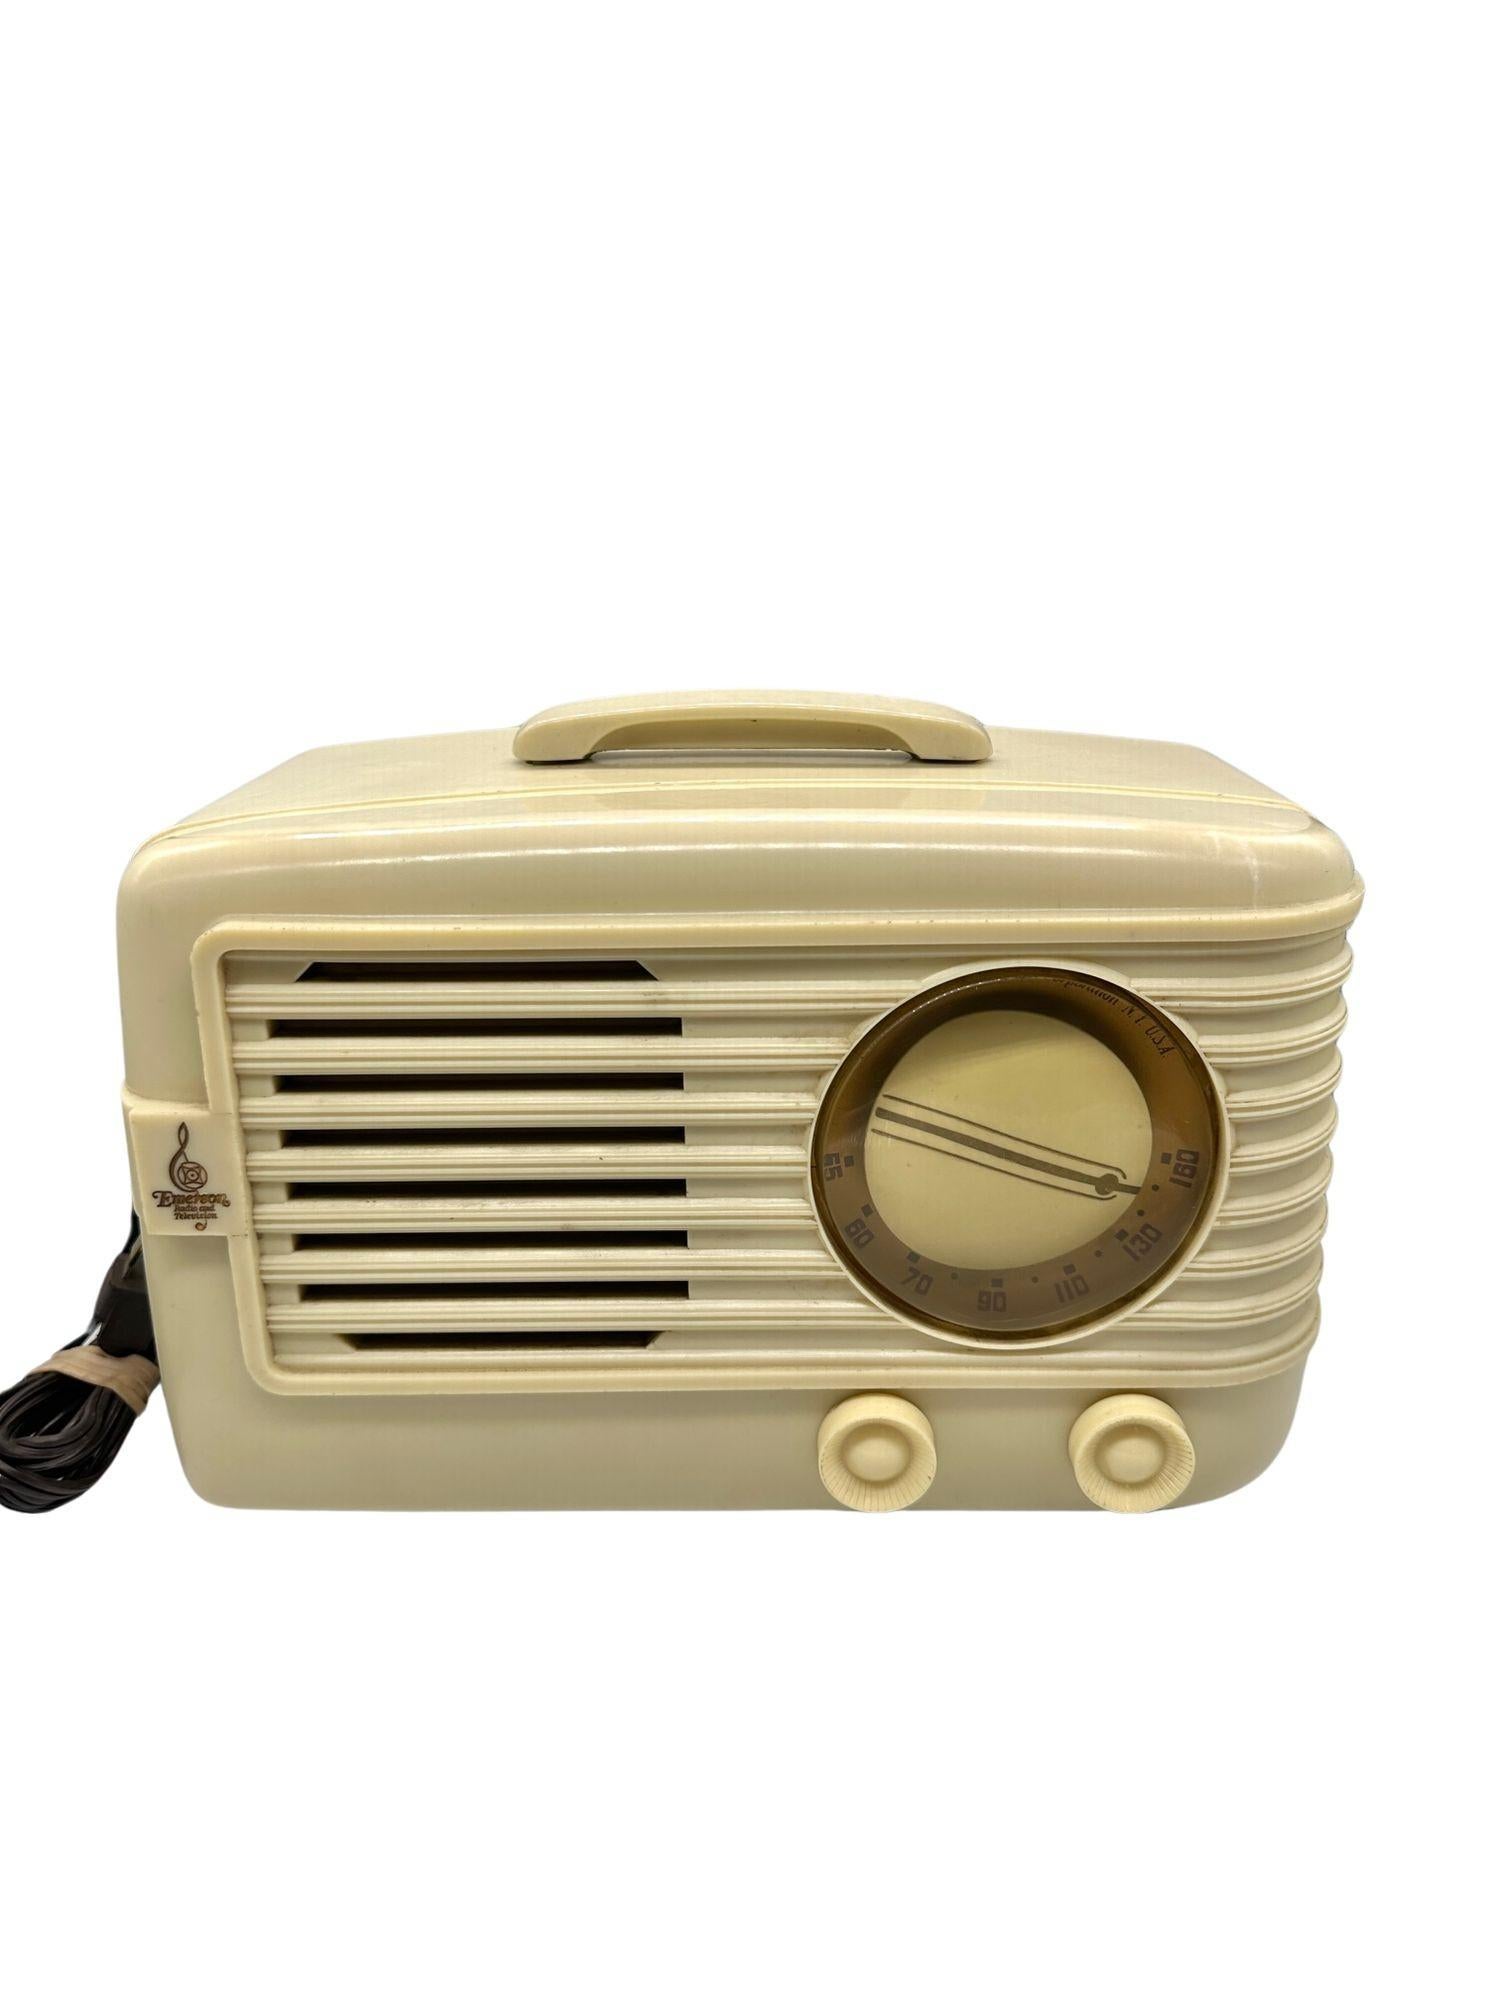 Elfenbein 1949 Emerson Modell 581 Plaskon AM Röhrenradio Golden Age Beauty

Dieses Radio wurde ursprünglich aus Plaskon-Kunststoff hergestellt, einem dauerhaften Vorläufer der heutigen Kunststoffe auf Polycarbonat- und Styrolbasis. Hergestellt von